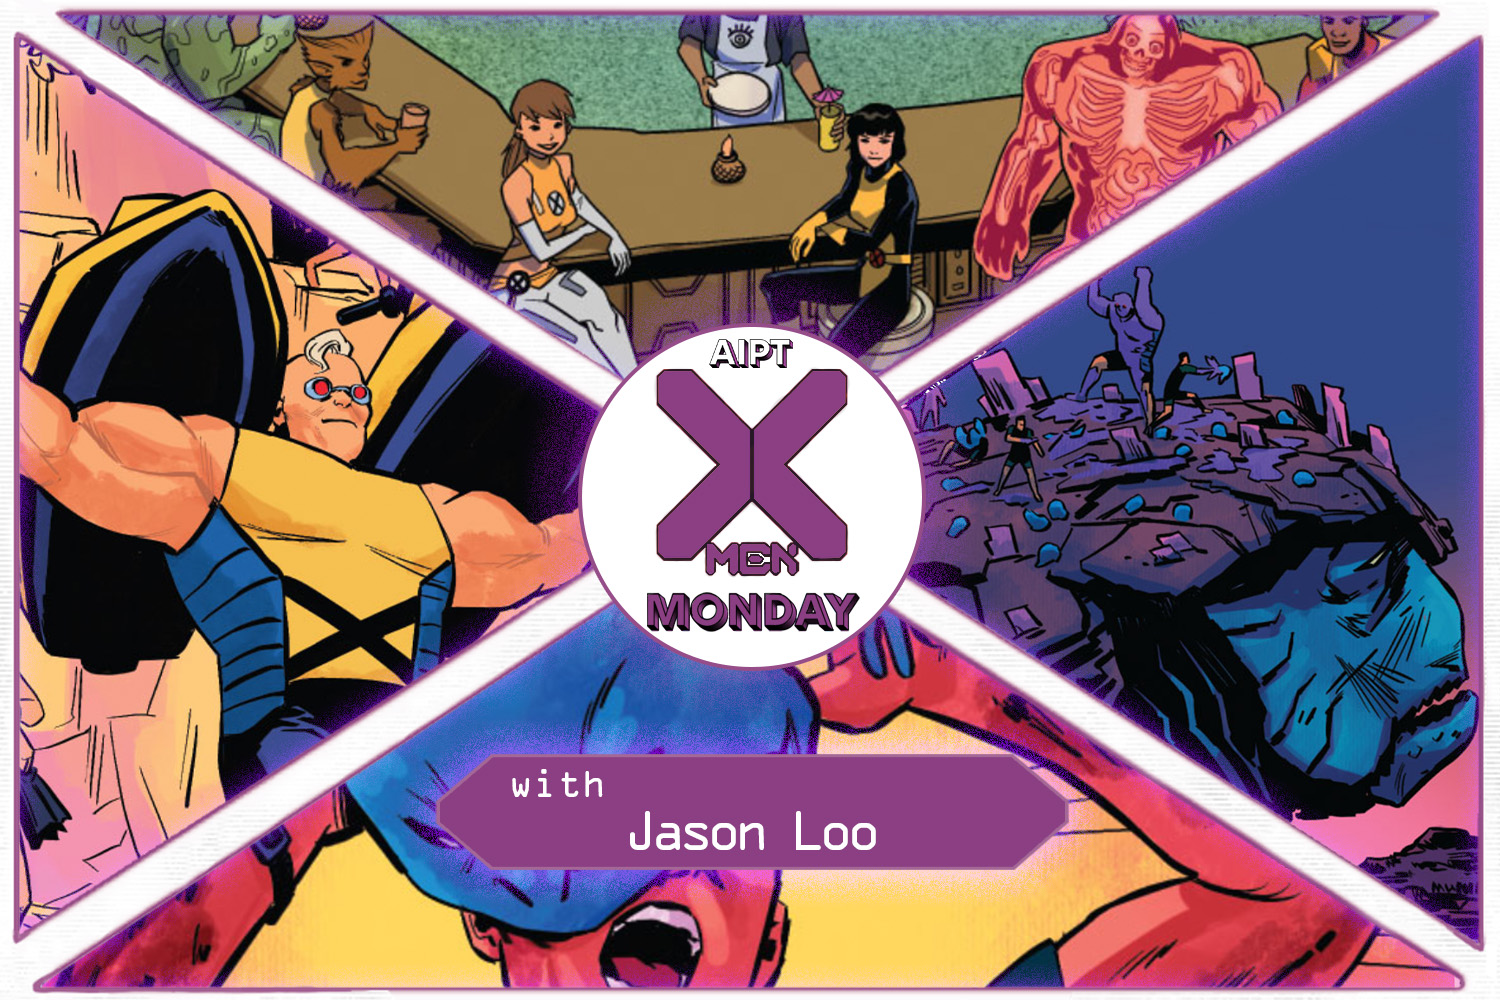 X-Men Monday #157 - Jason Loo Discusses 'X-Men Unlimited'